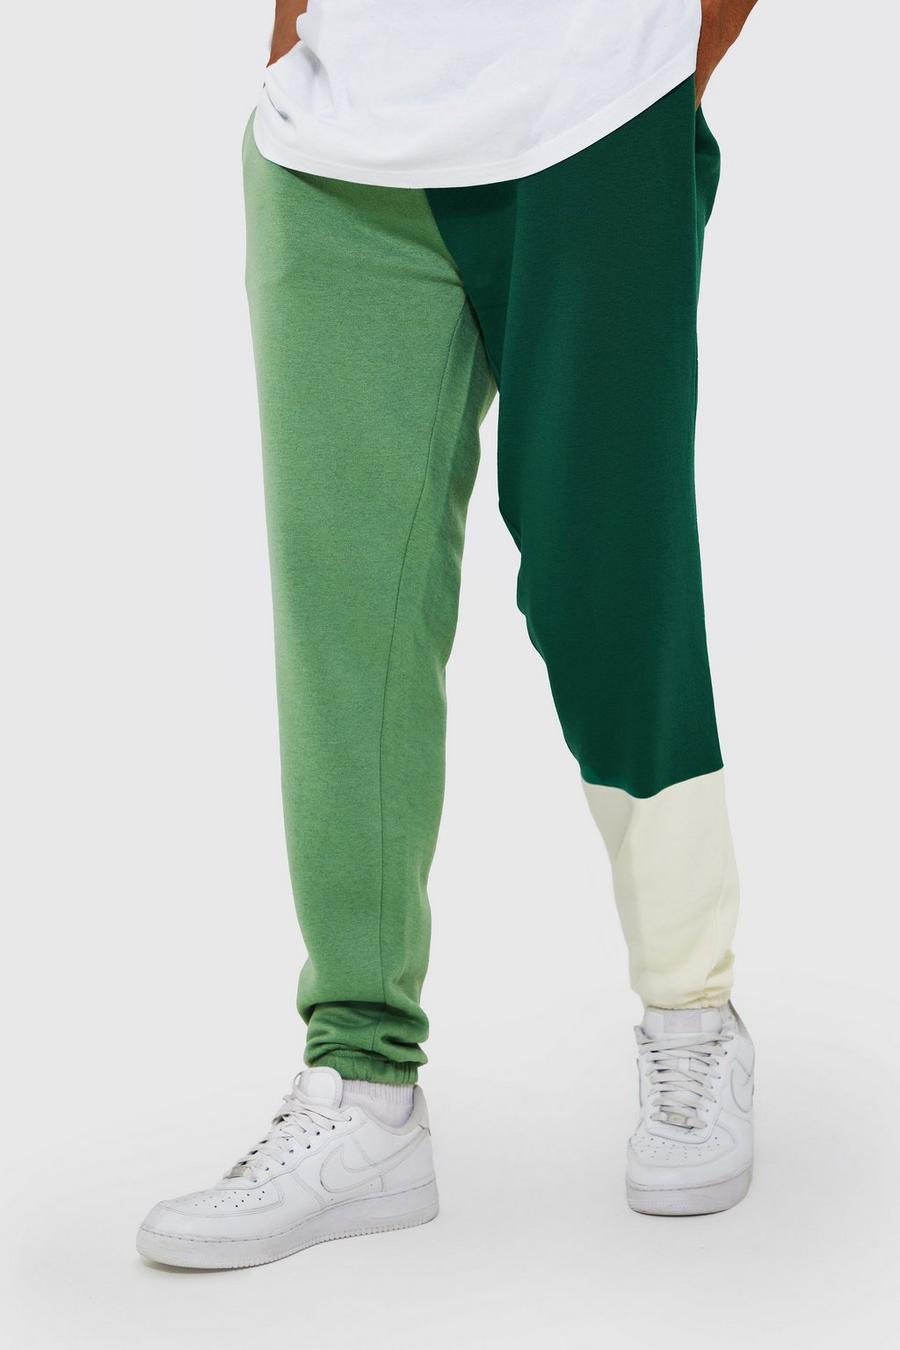 Pantalón deportivo Tall con retazos y colores en bloque, Green verde